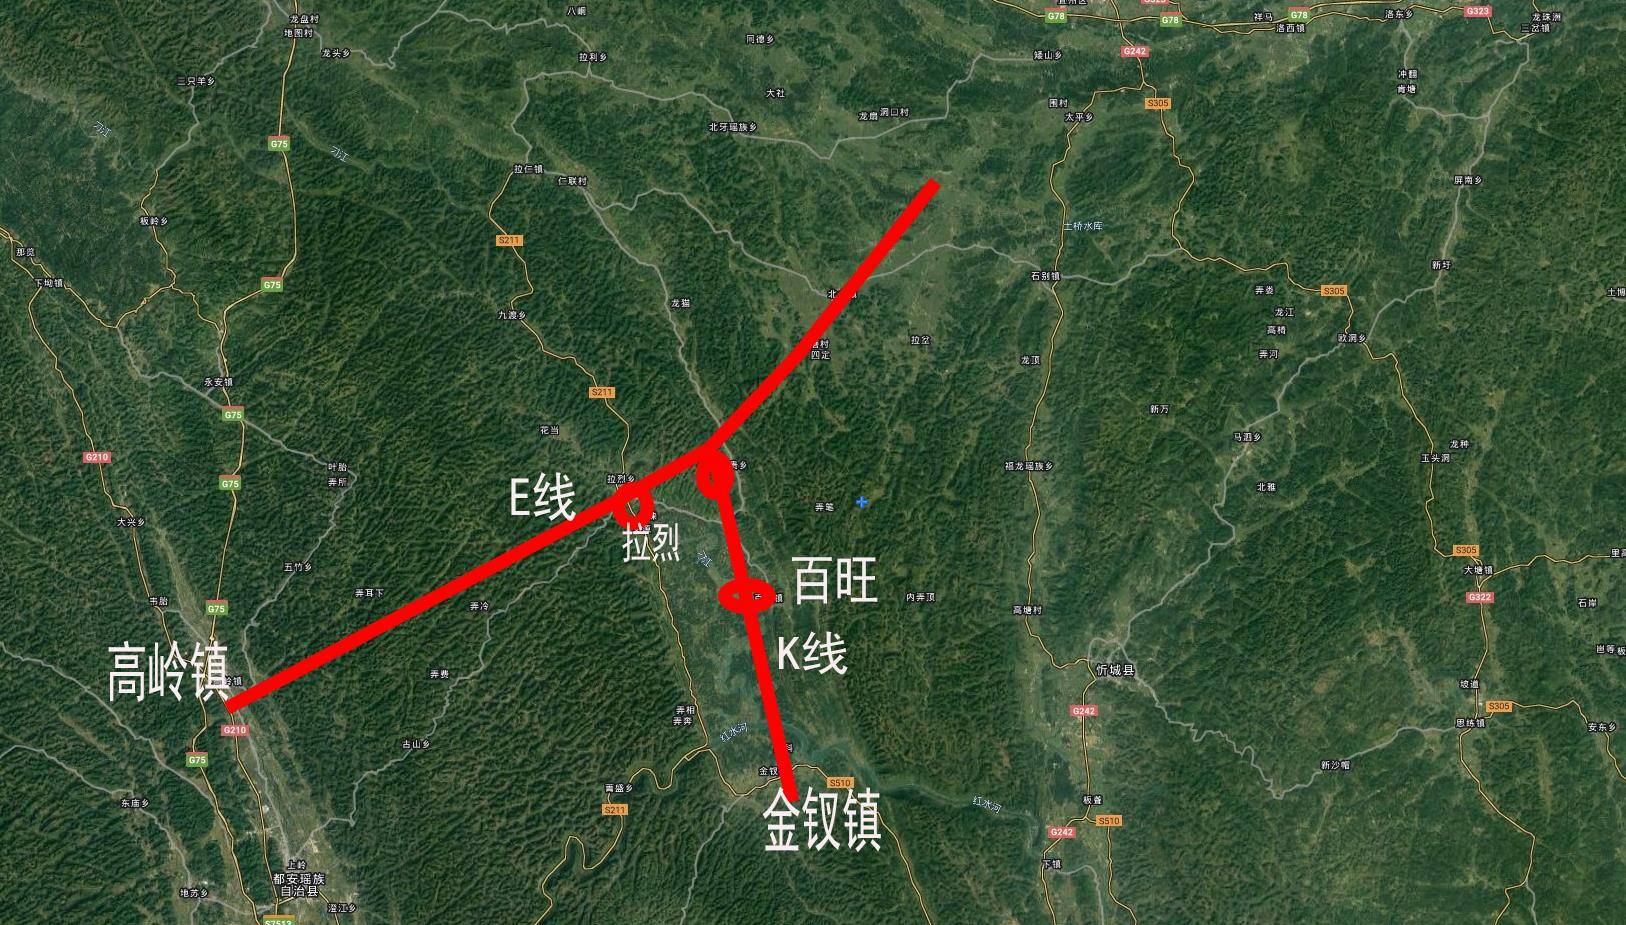 广西最特别的一条高速公路开工建设,同时建两条?